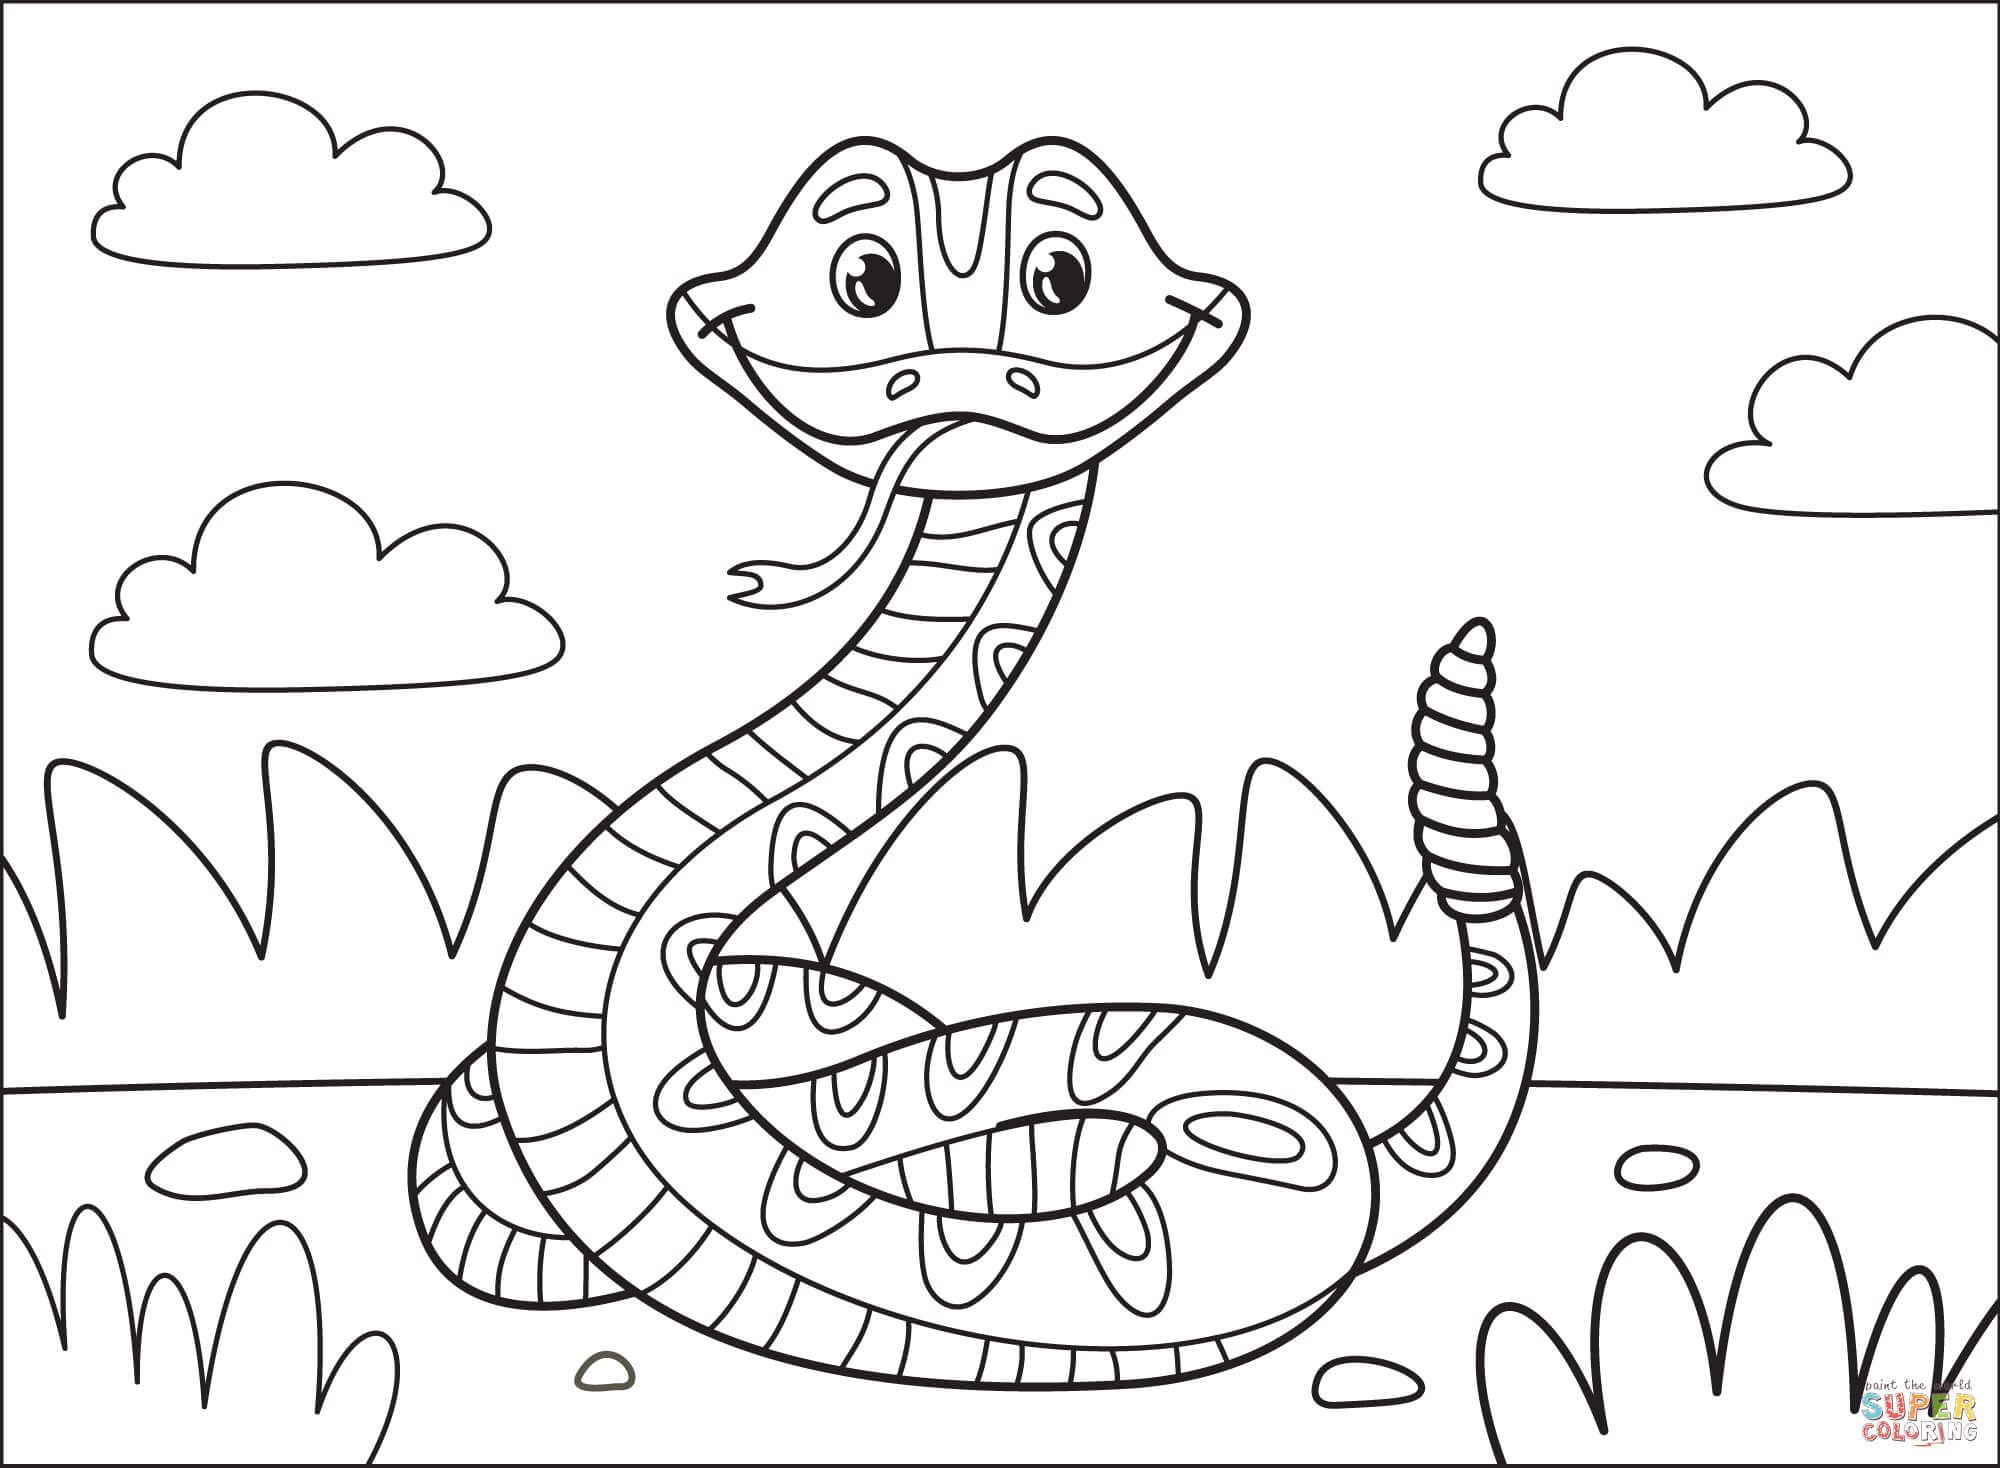 Dibujo de serpiente de cascabel para colorear dibujos para colorear imprimir gratis